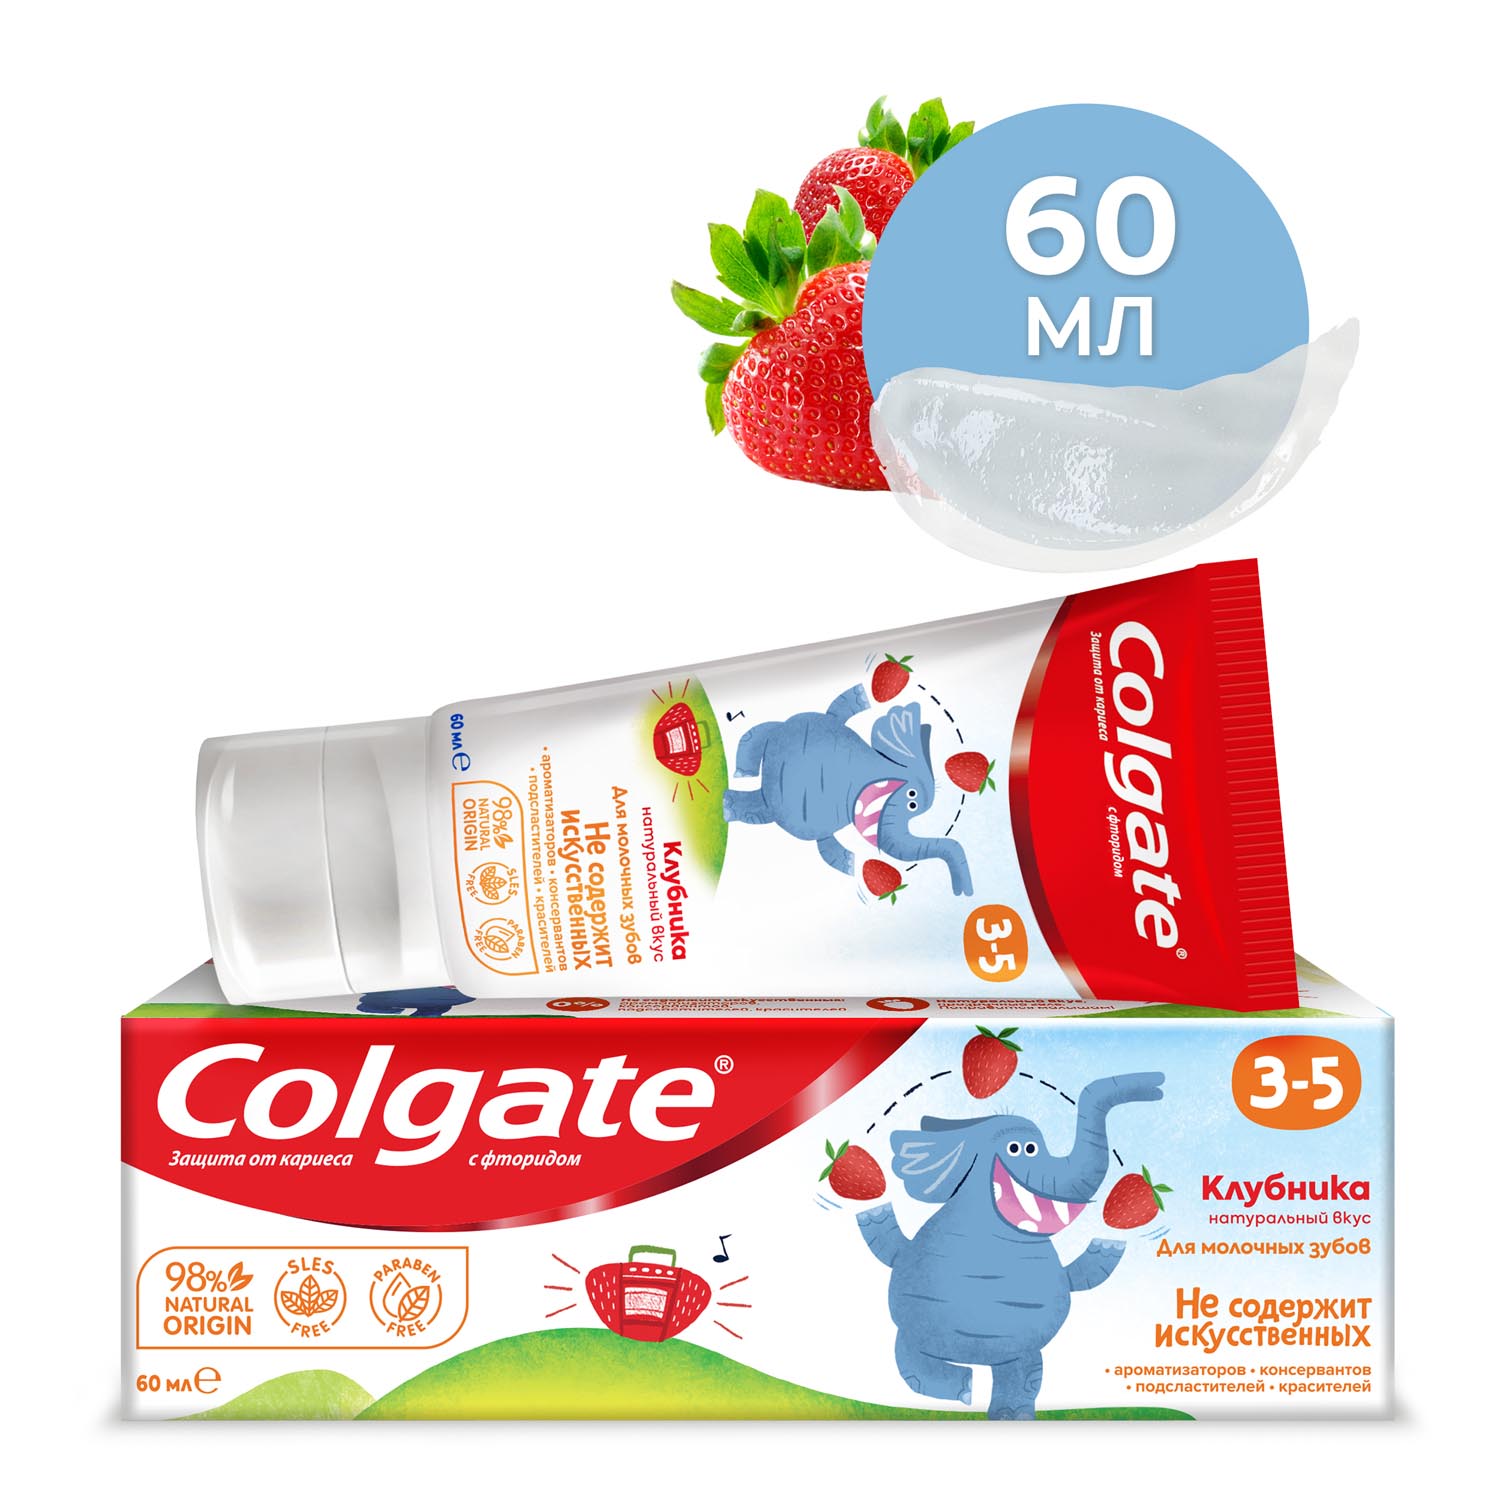 Зубная паста детская Colgate 3-5, защита от кариеса, с фторидом, для детей от 3 до 5 лет, со вкусом клубники, 60 мл детская зубная паста r o с s junior шоколад и карамель 74 г